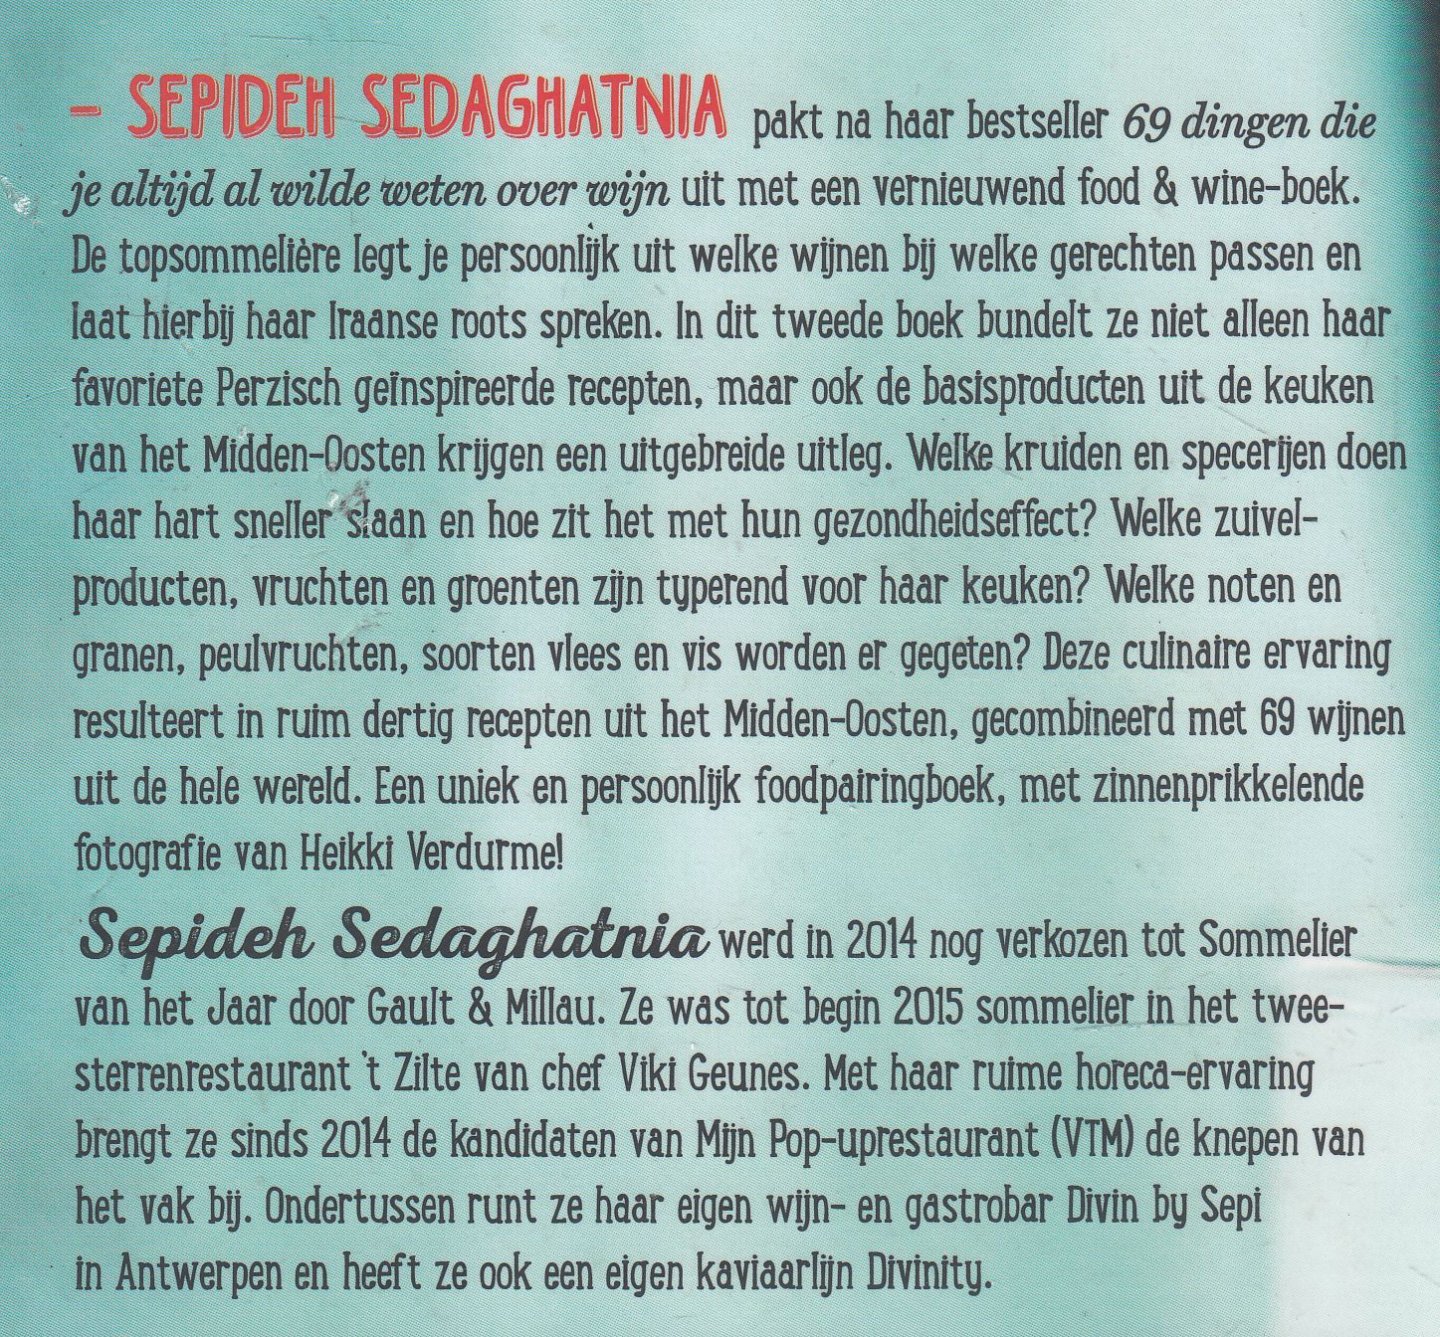 Sedaghatnia, Sepideh - 69 food & wine affairs (NL)